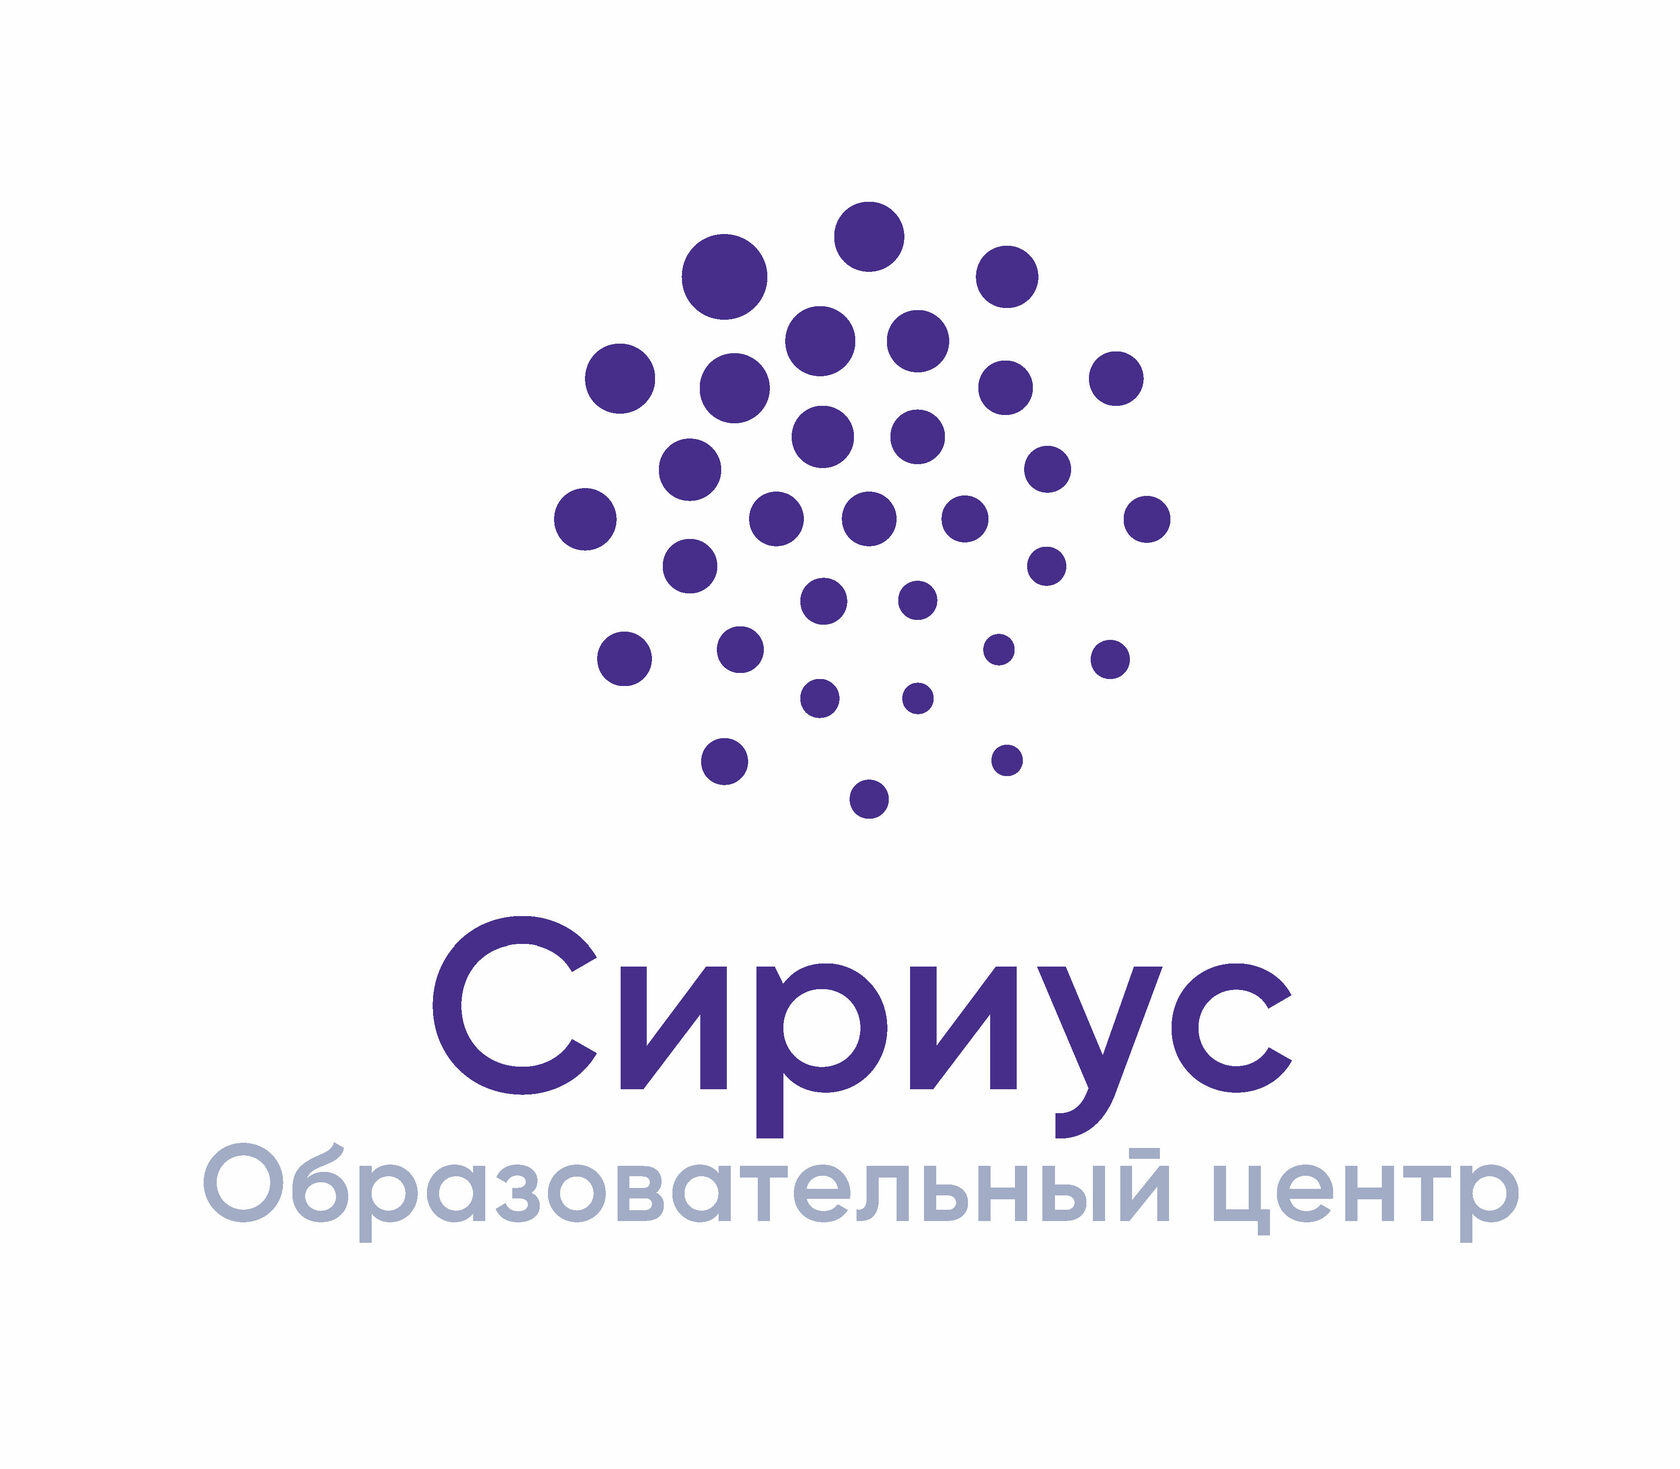 Образовательный центр Сириус Логотип(logo)